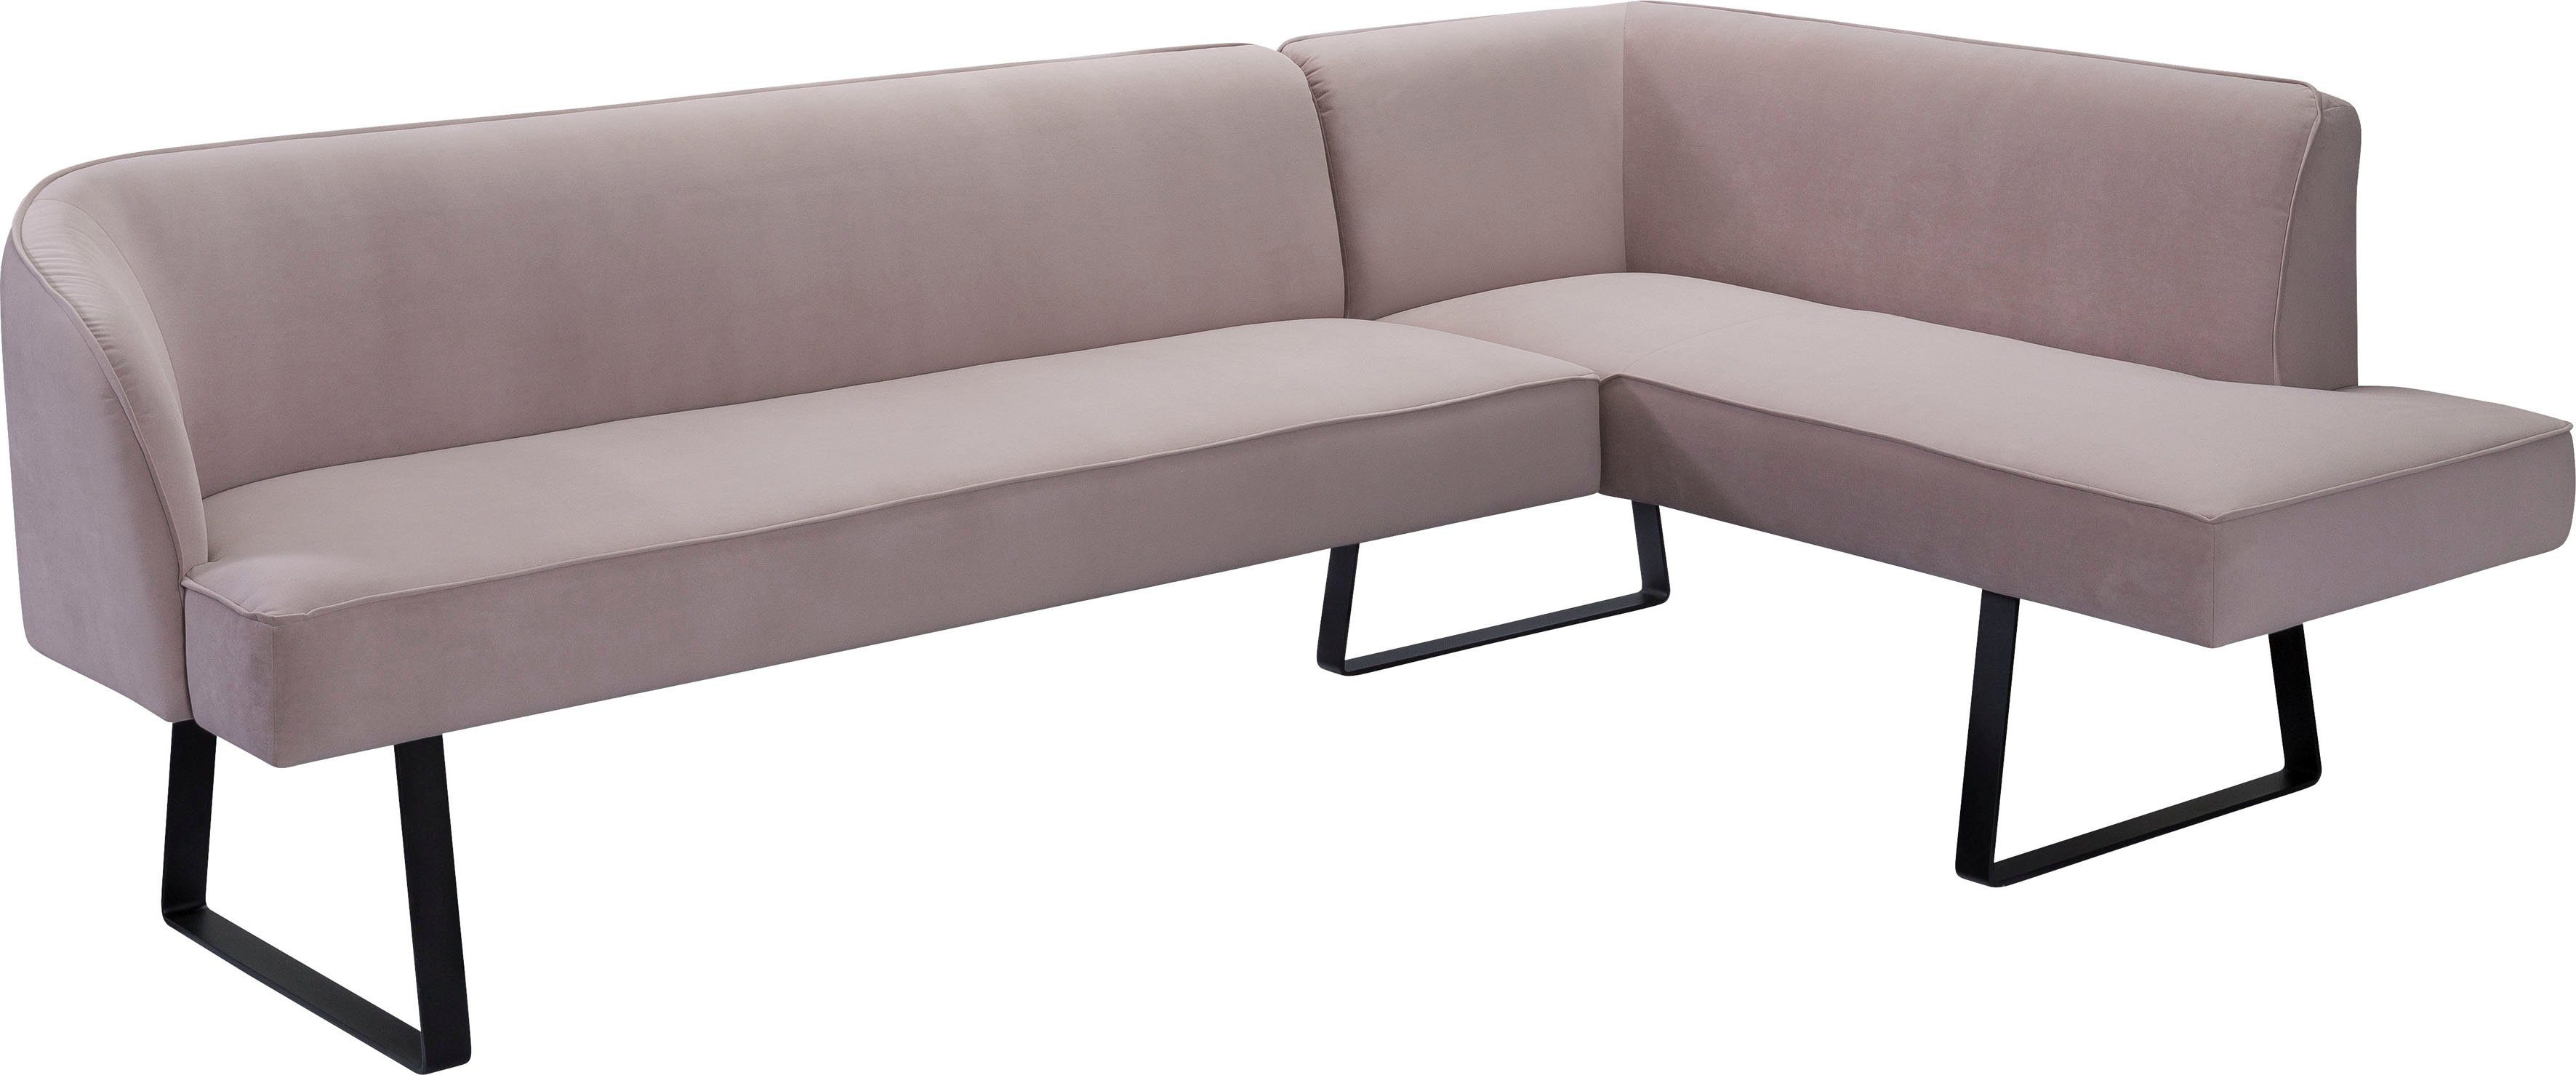 Qualitäten verschiedenen Keder Eckbank mit Metallfüßen, in sofa Americano, exxpo fashion und - Bezug